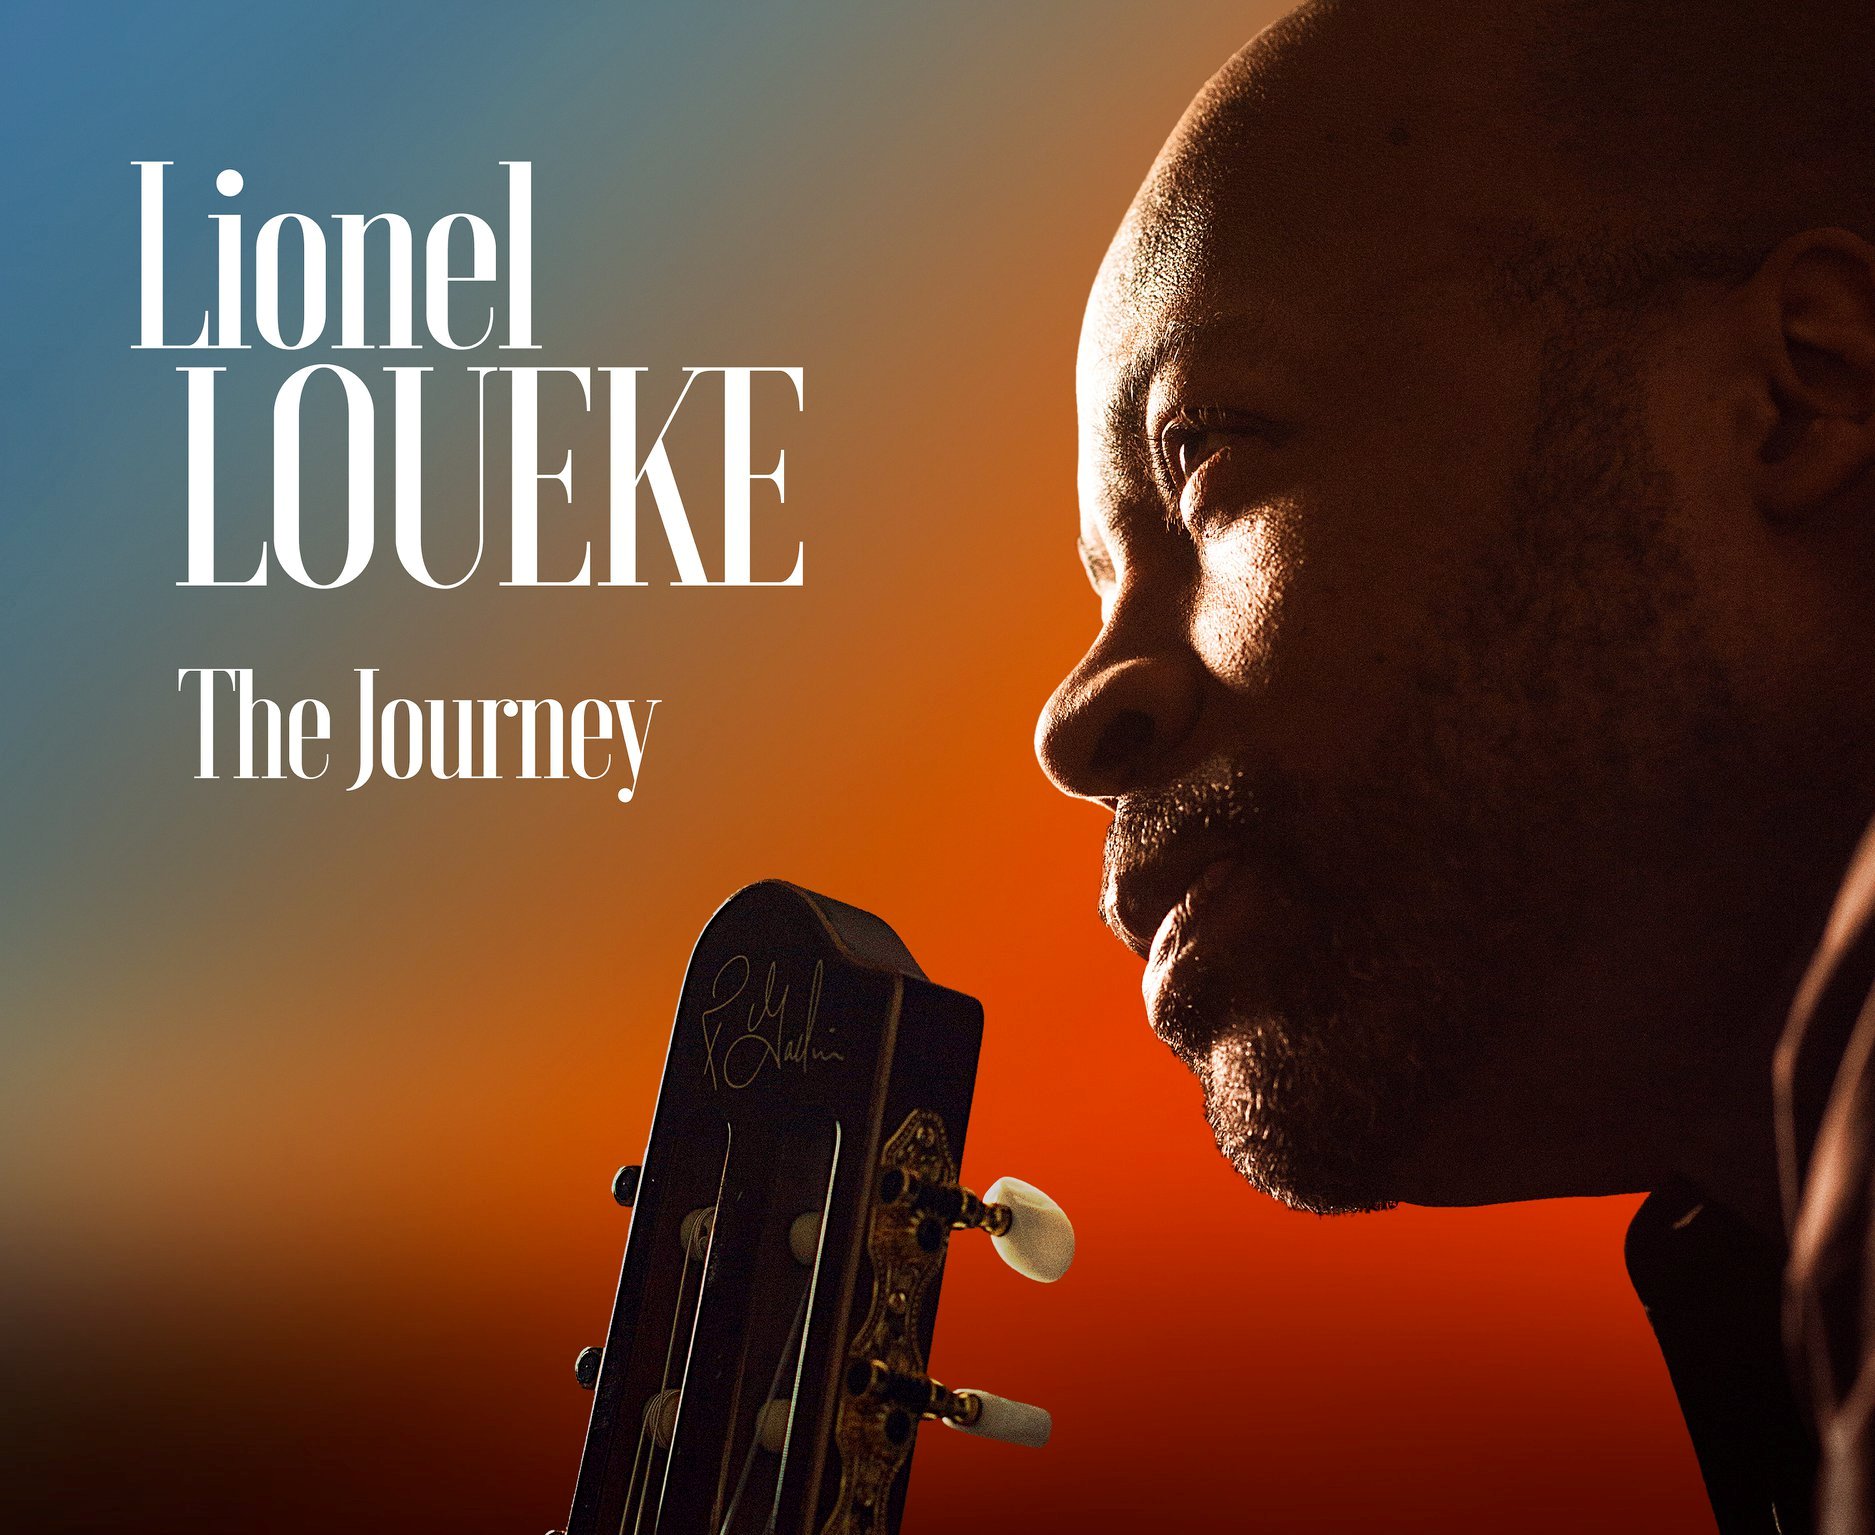 Lionel LOUEKE propose un voyage de liberté et vrai dans son nouvel album “The Journey”